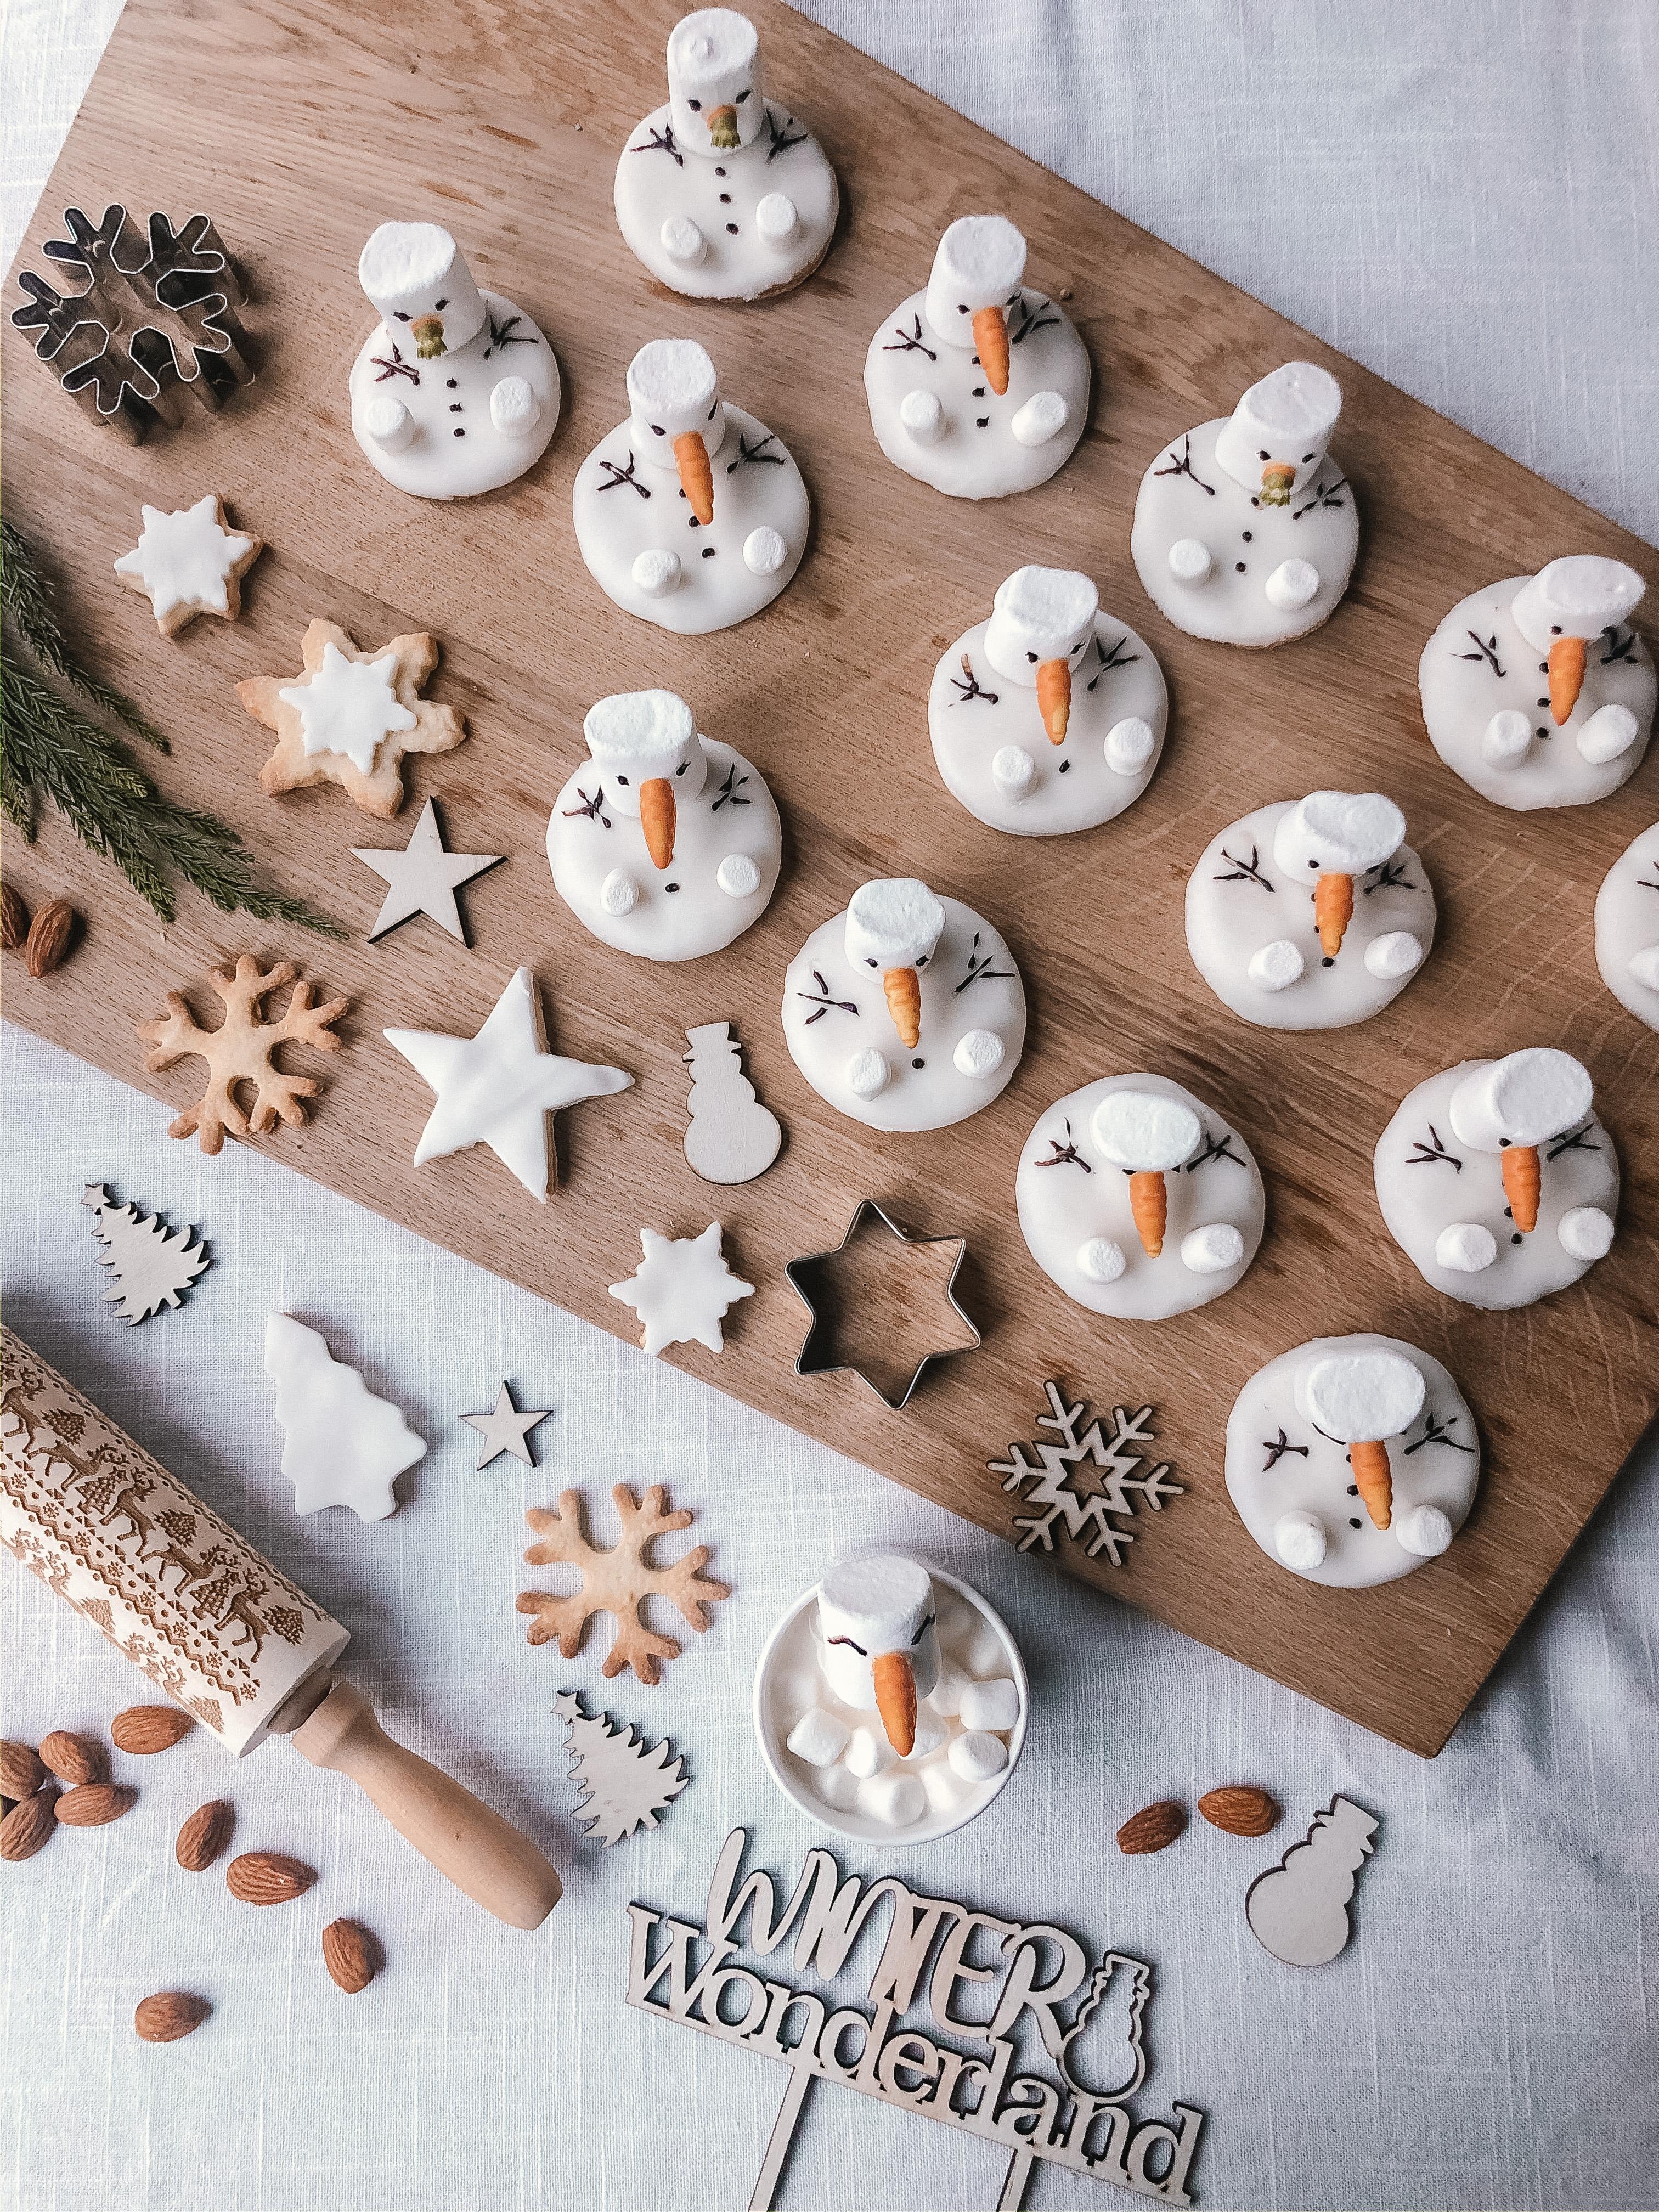 Die Olafhorde von oben ⛄️
#foodflatlay #rezepte #weihnachtsbäckerei #christmasiscoming